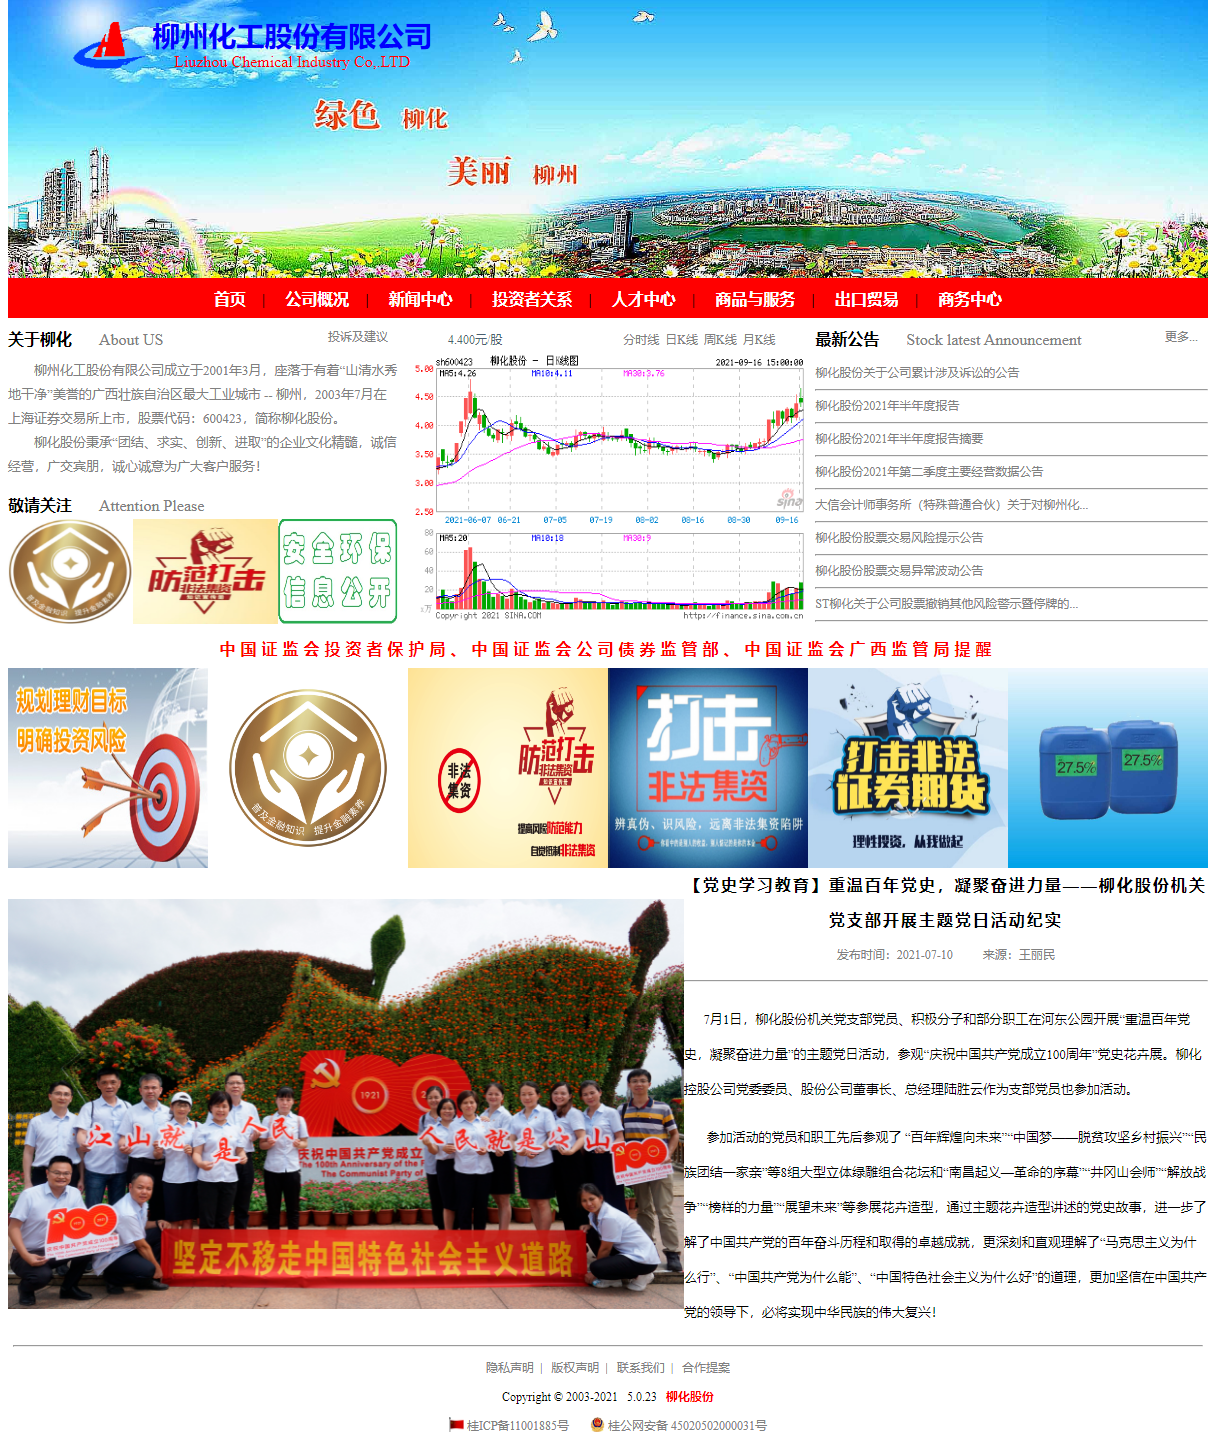 柳州化工股份有限公司网站案例